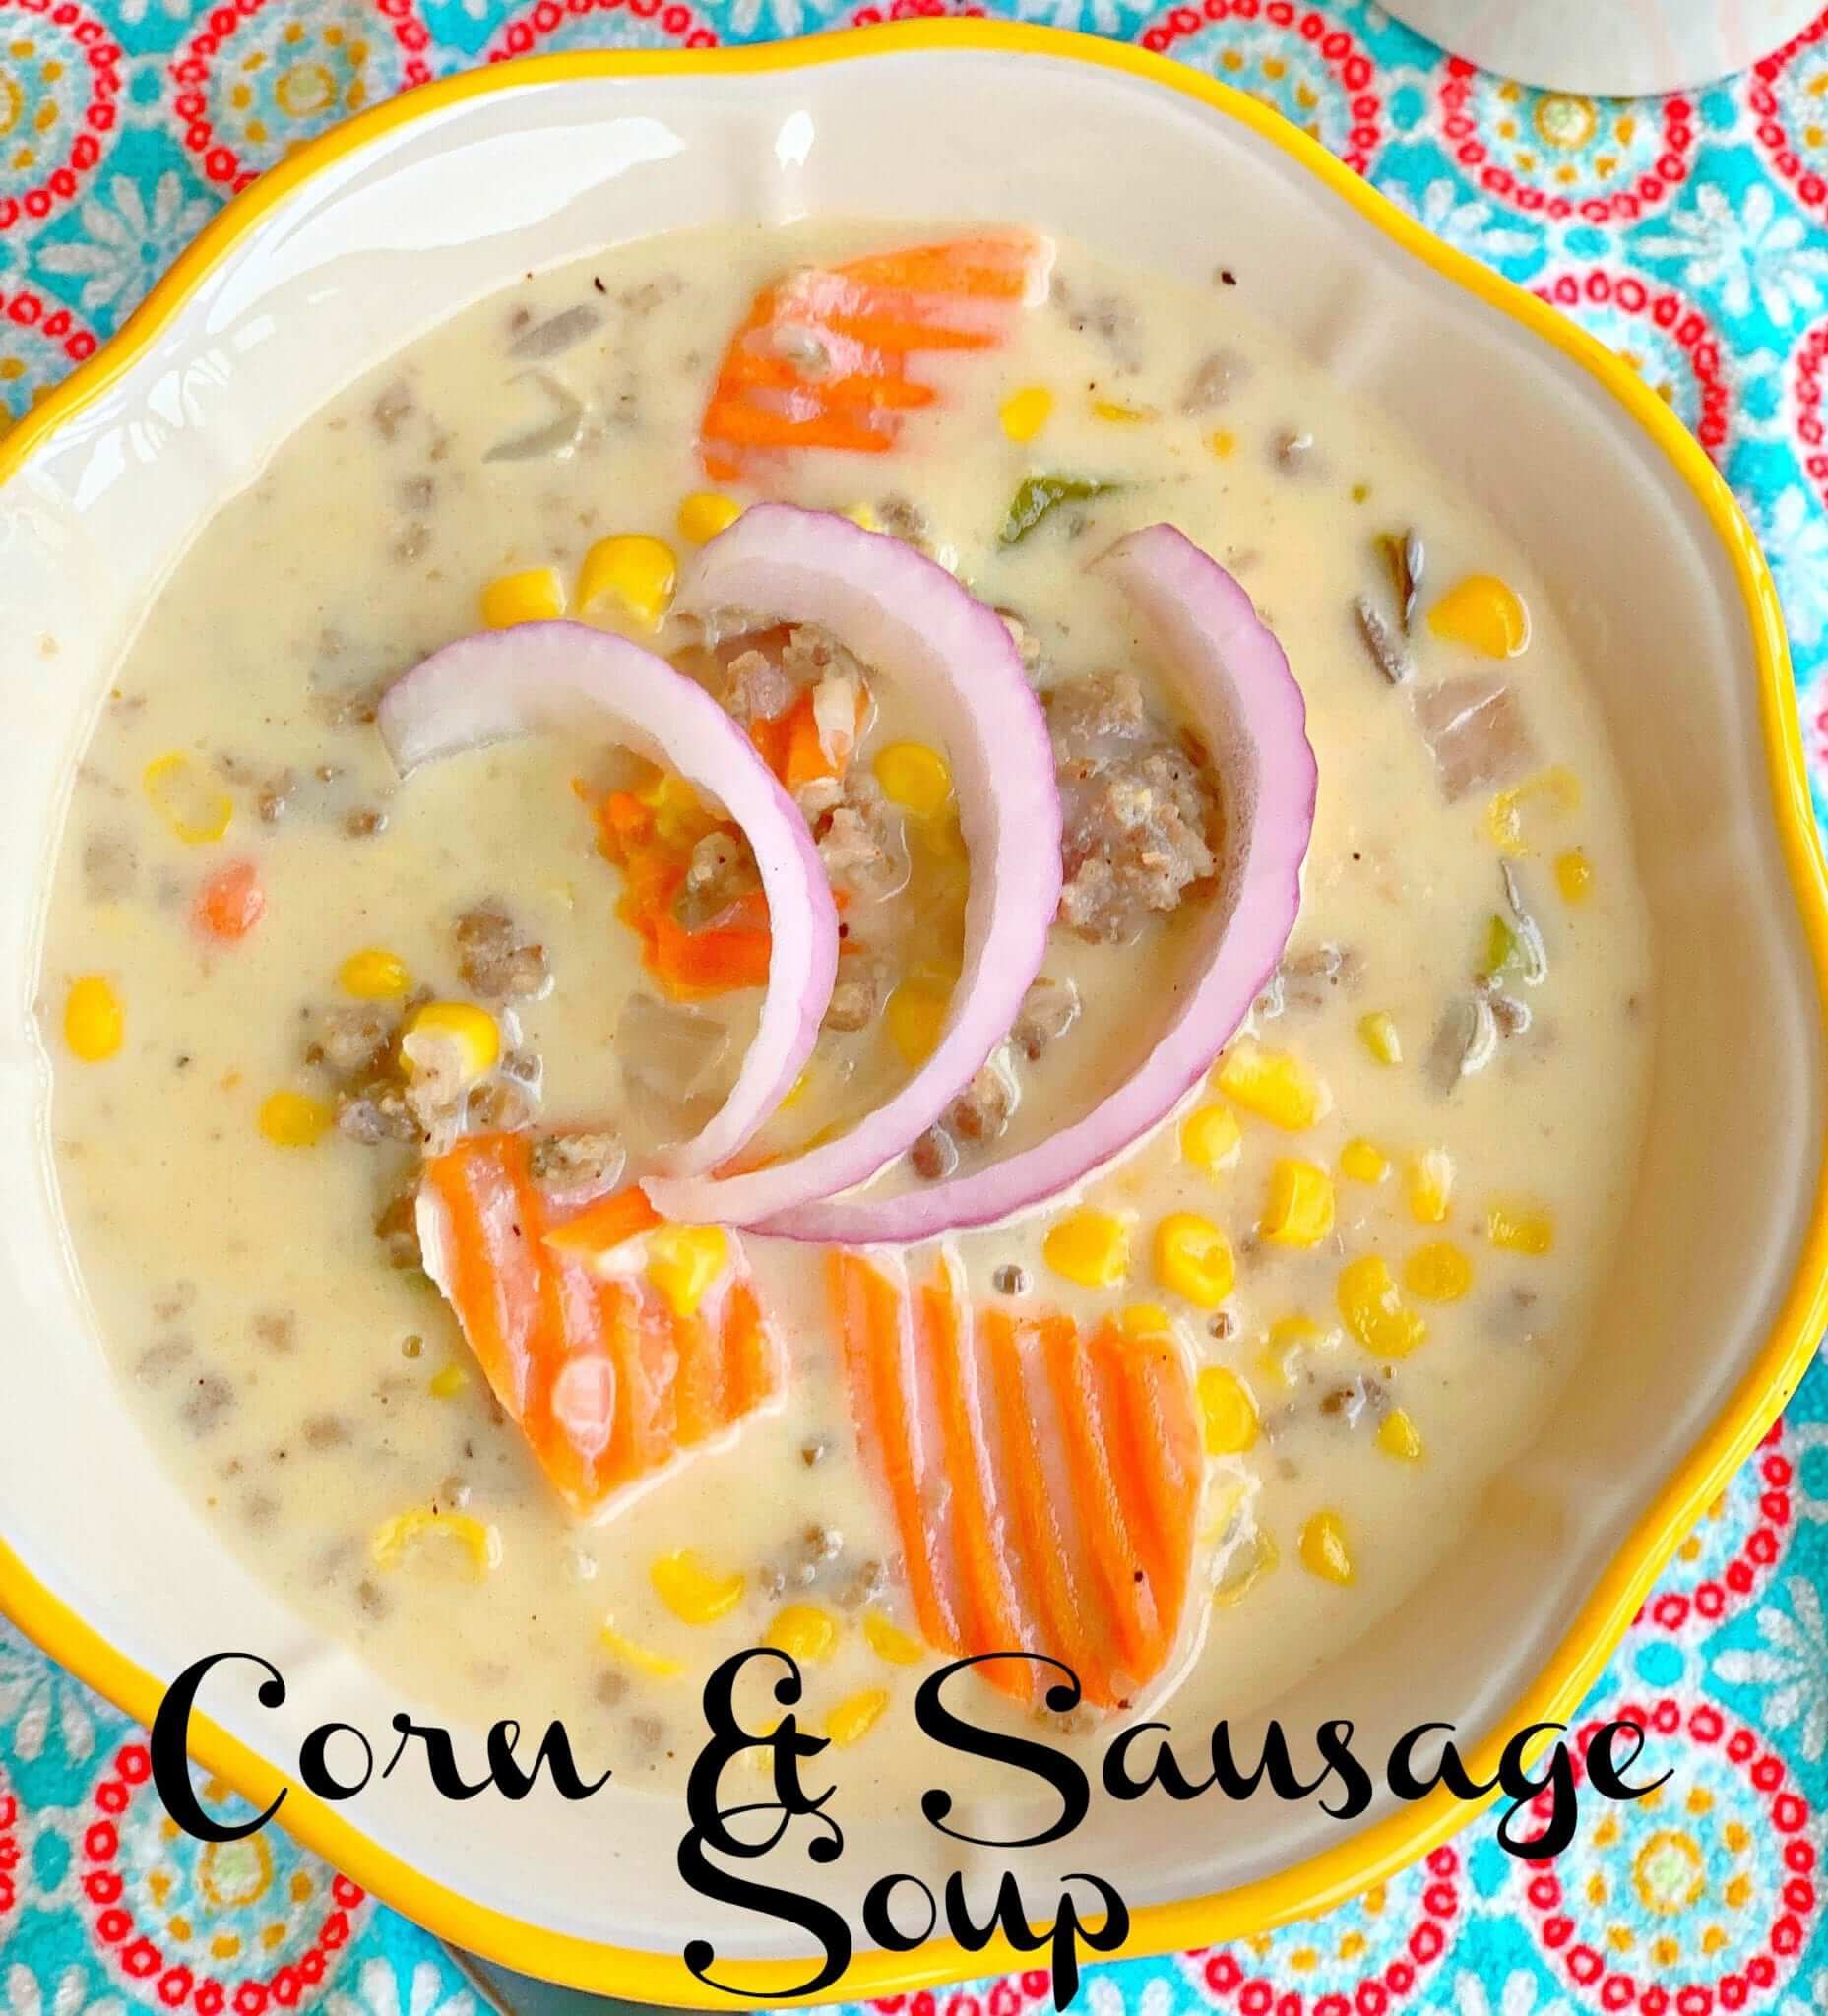 Corn and Sausage Soup